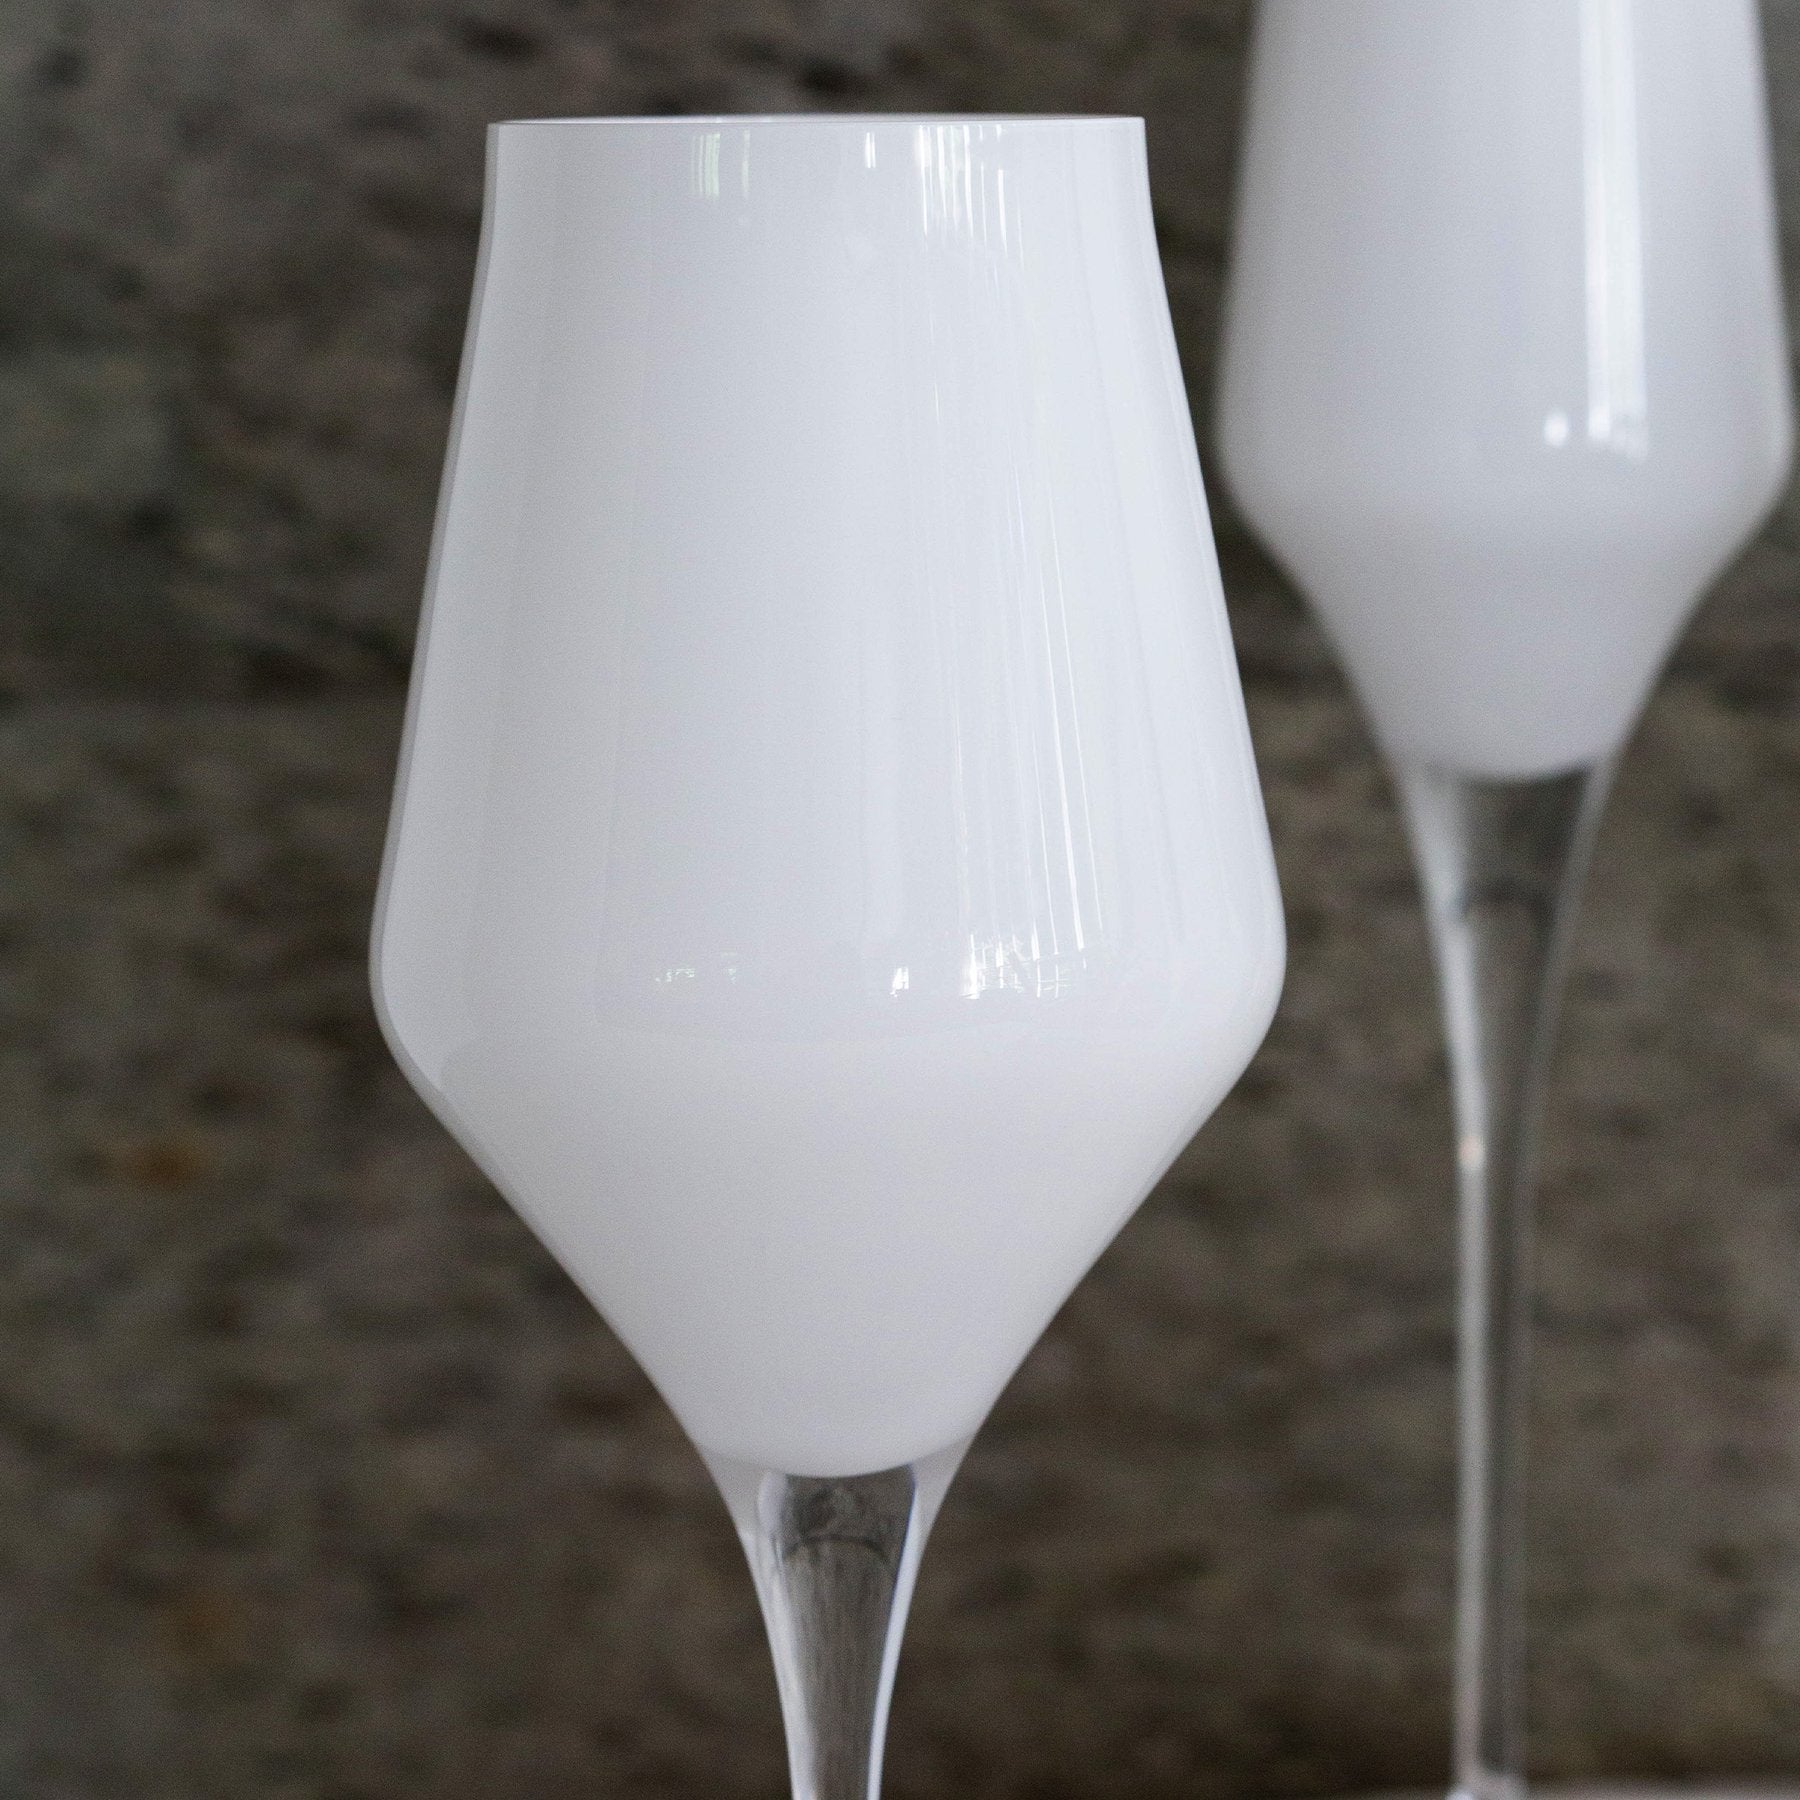 Contessa White Wine Glass